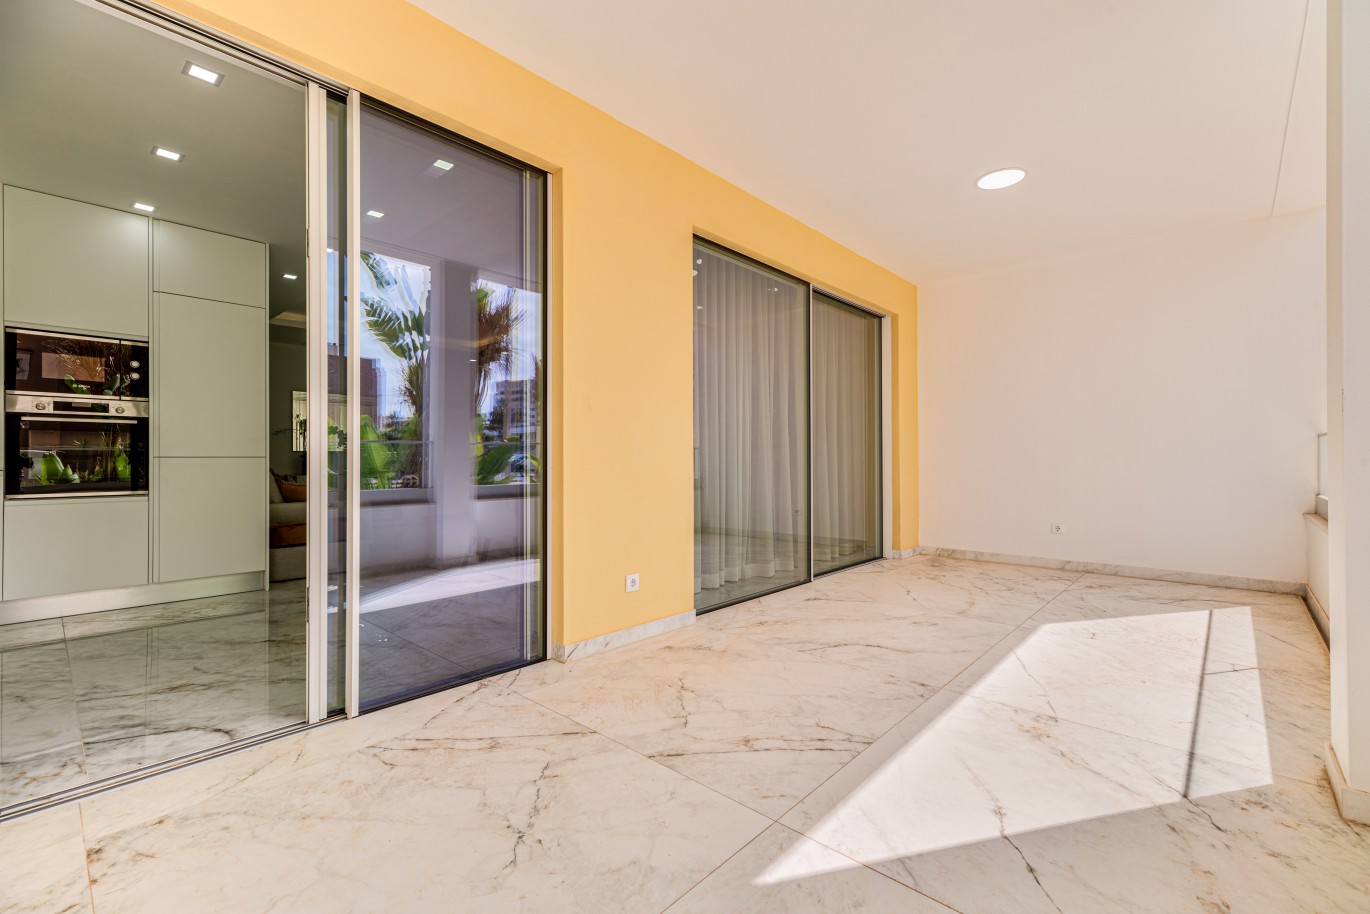 Apartamento, com terraço, para venda, em Lagos, Algarve_238590